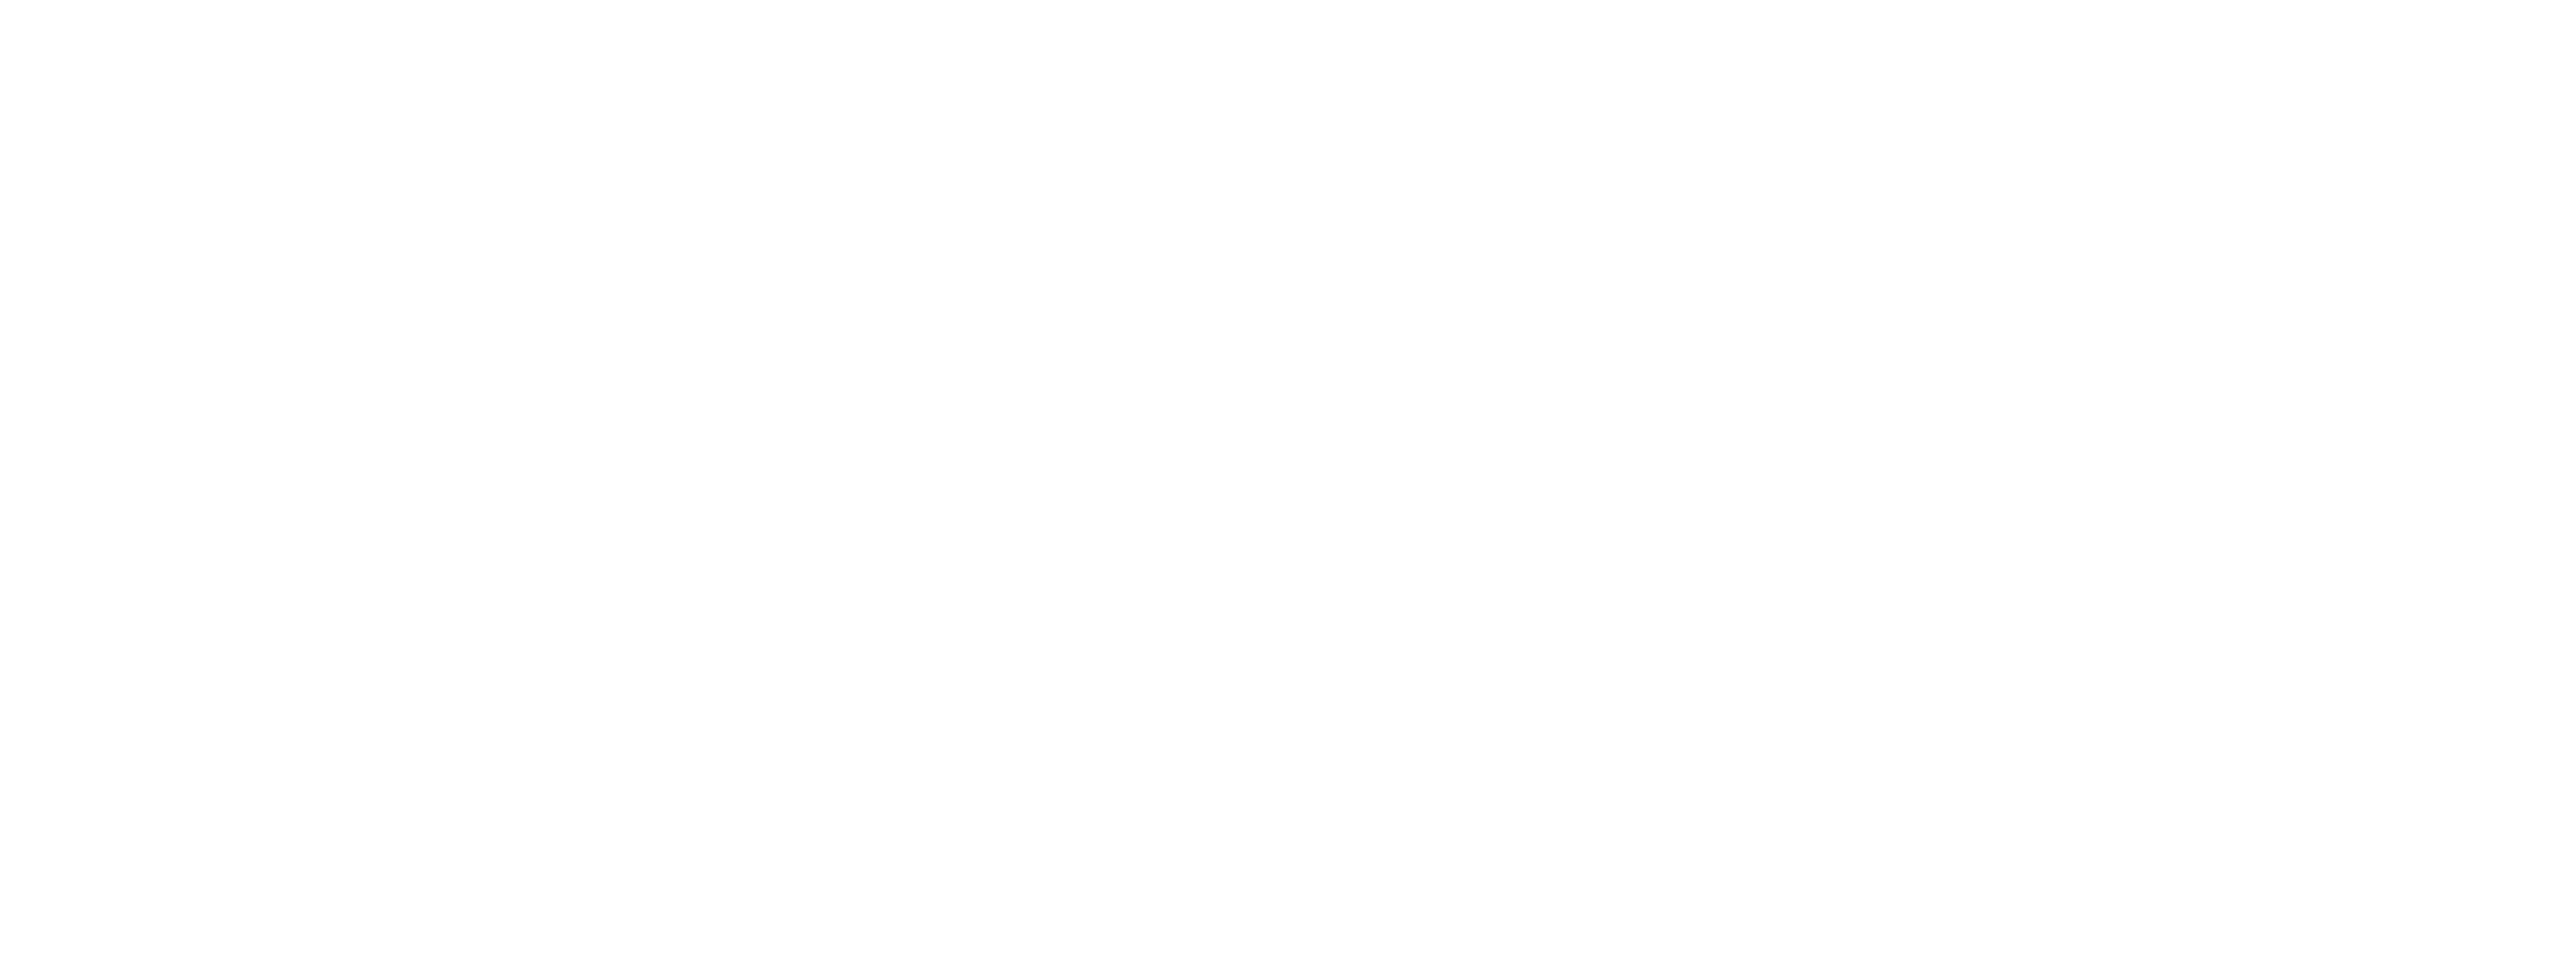 Spelman Media